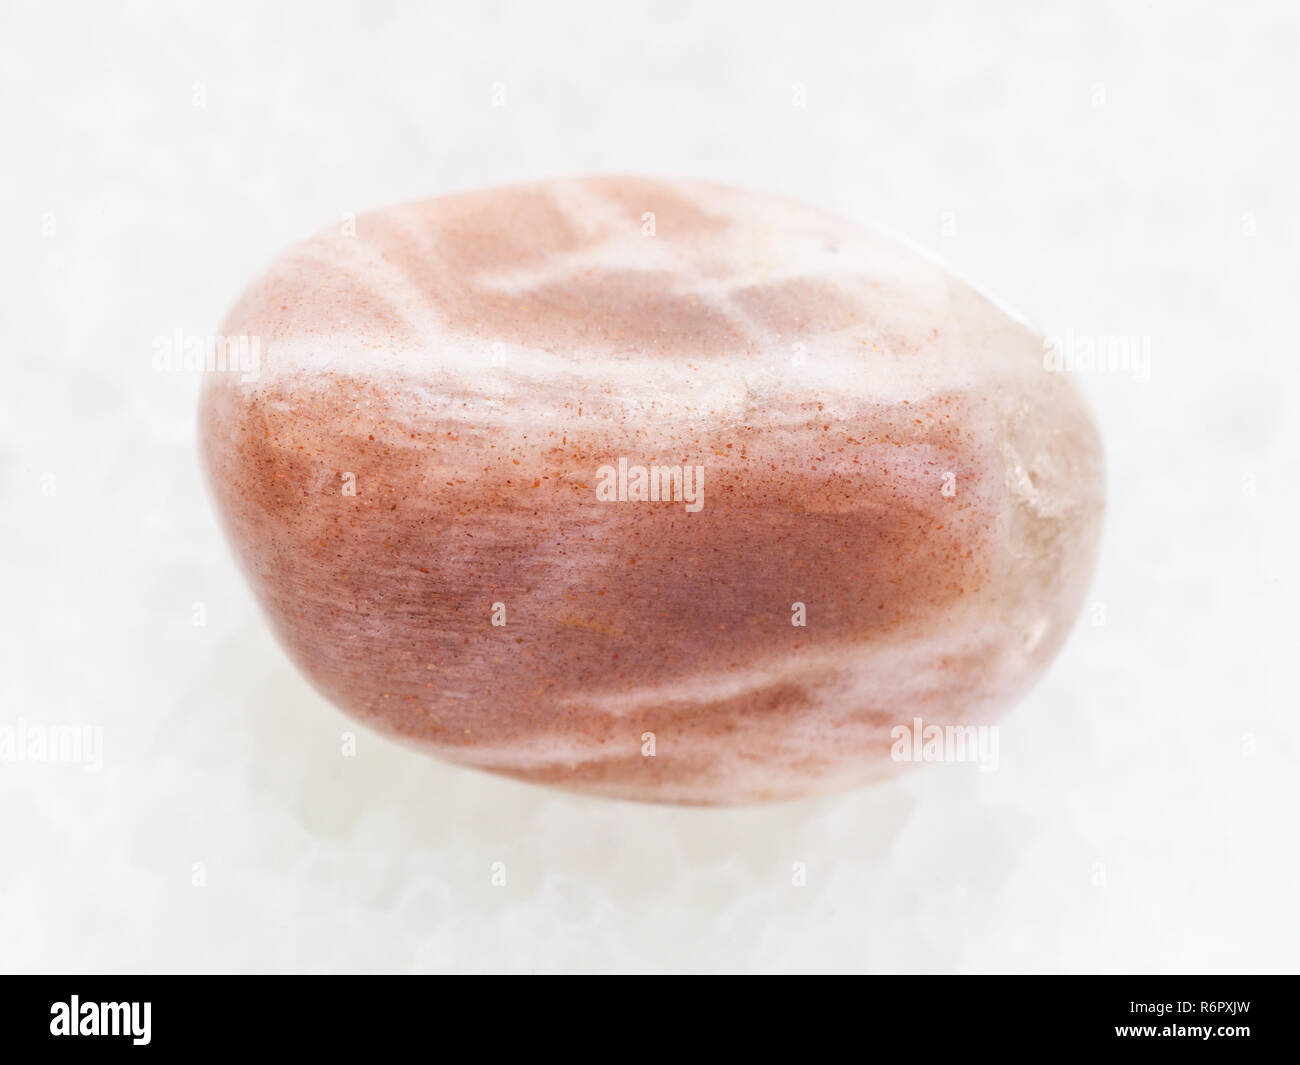 tumbled moonstone gemstone on white marble Stock Photo